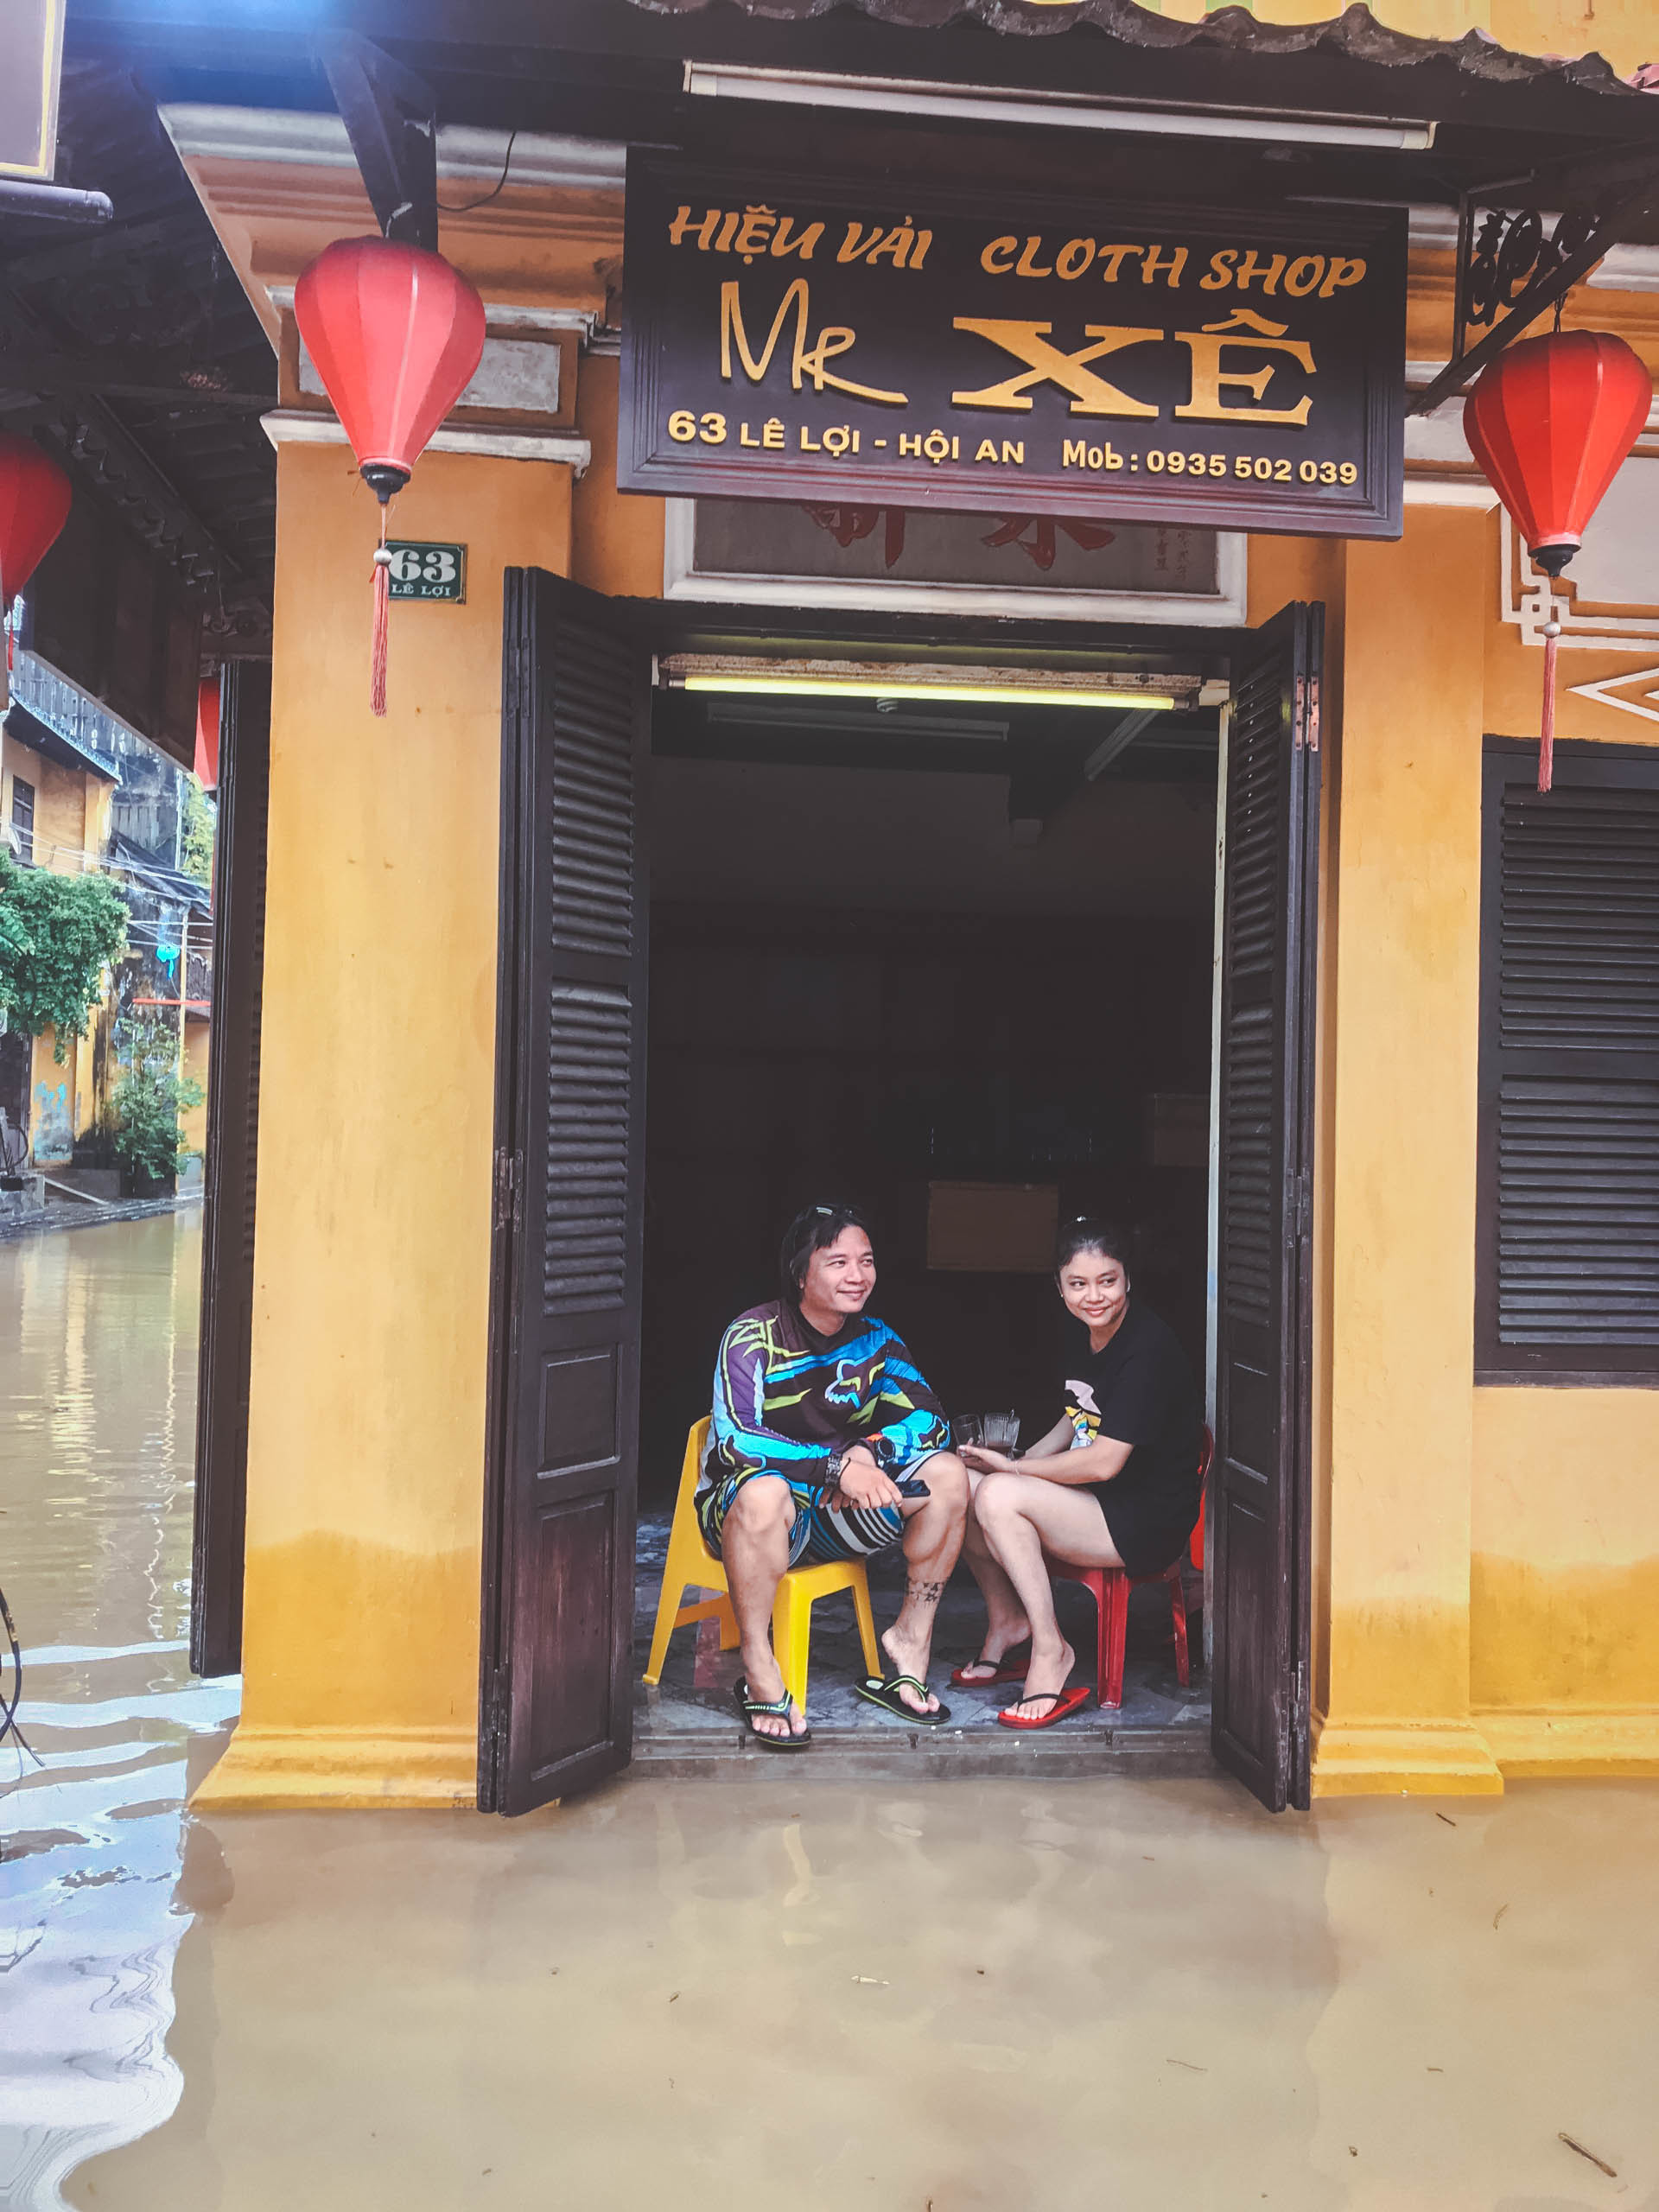 Du lịch Hội An mùa nước lũ: Chèo ván quanh phố cổ, lội nước uống cà phê